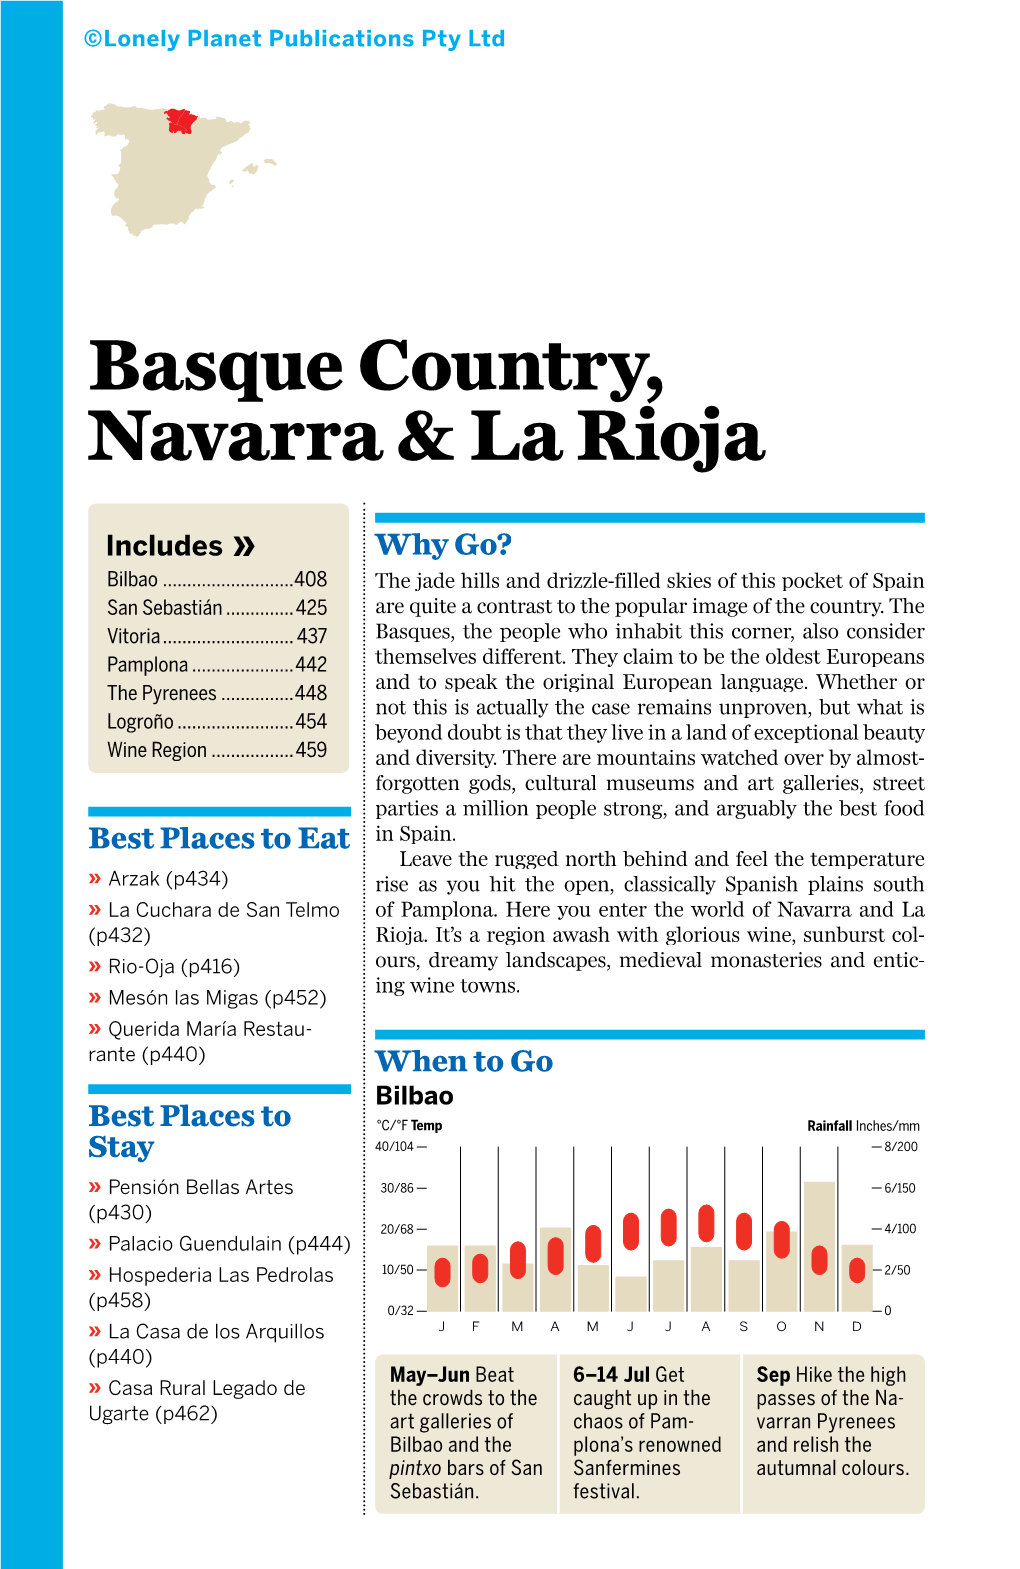 Basque Country, Navarra & La Rioja